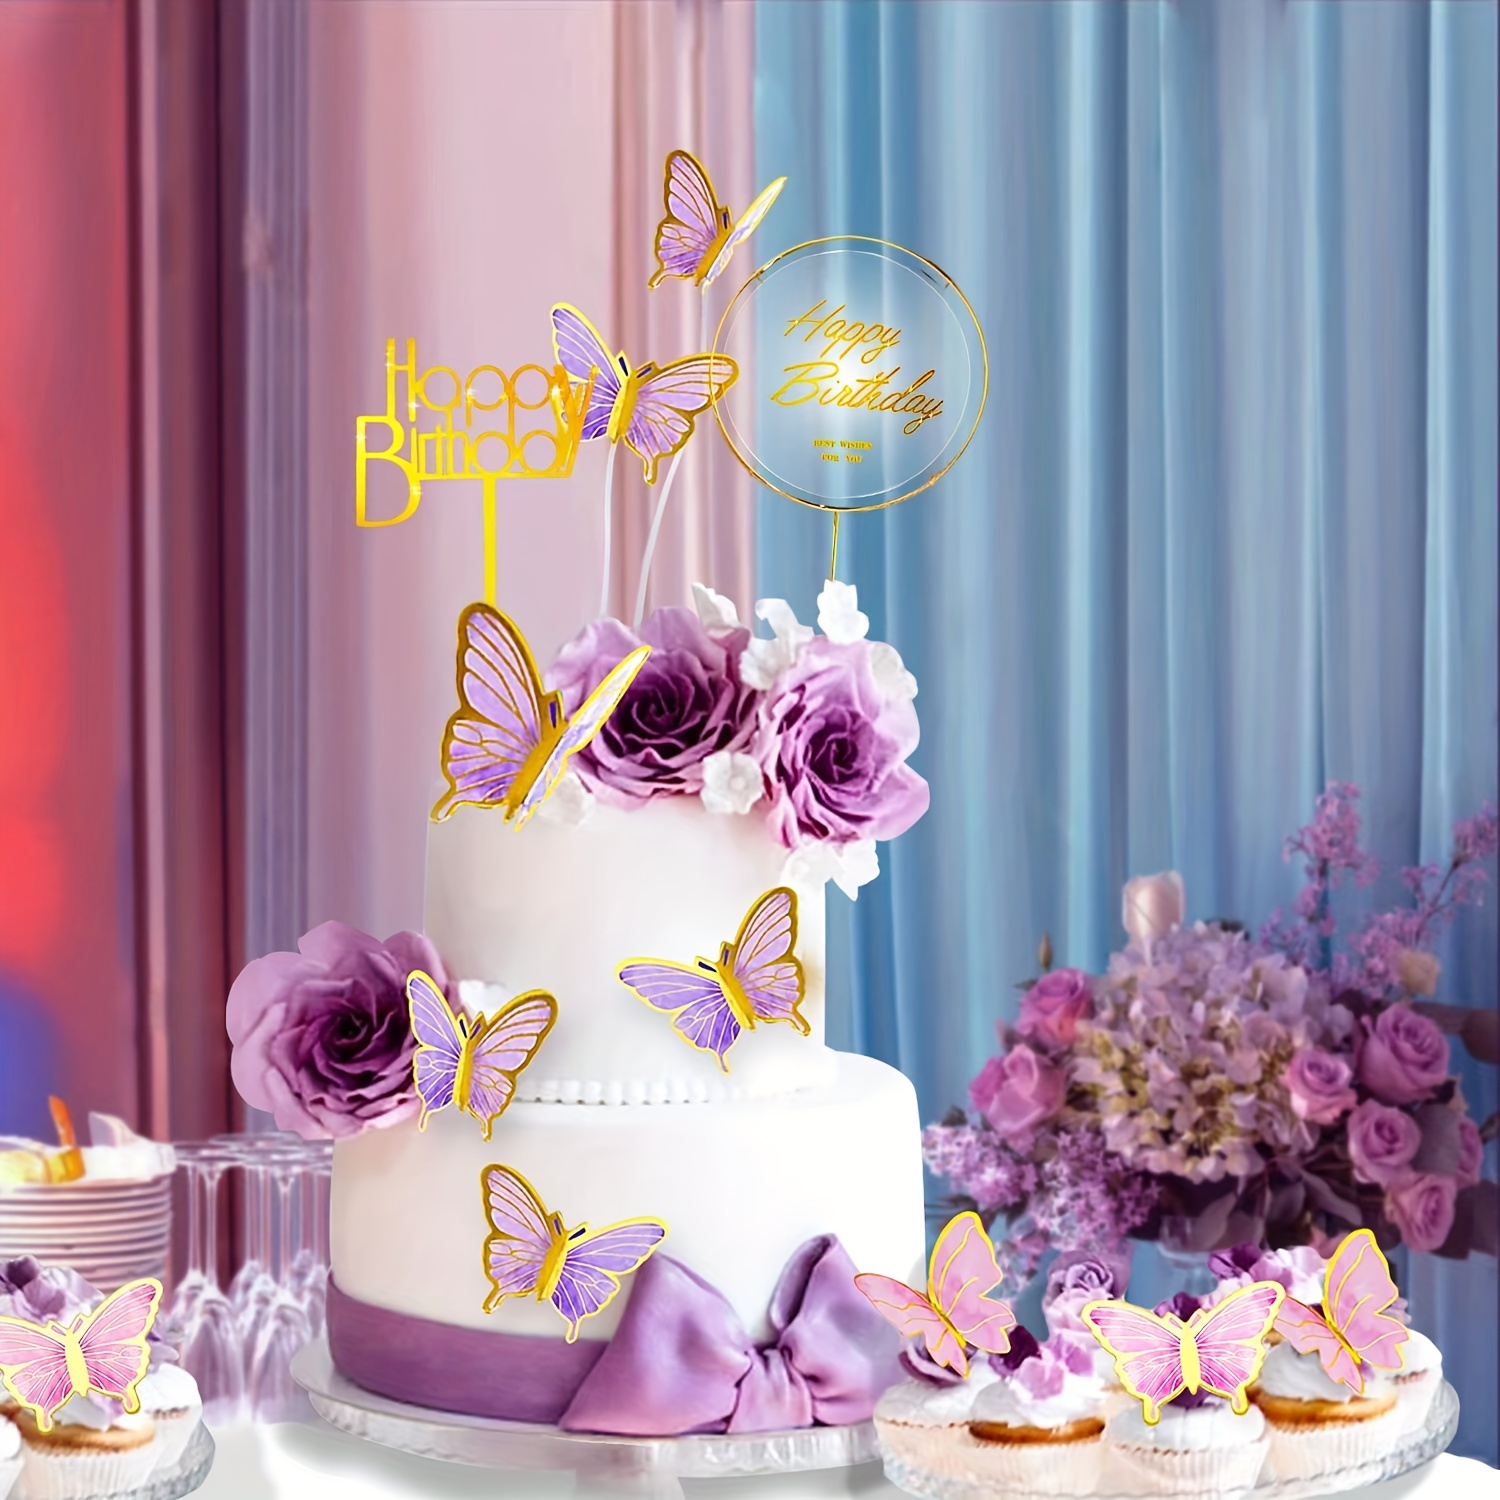 Lilo and Stitch - Decoraciones de cumpleaños, suministros de fiesta,  incluye pancarta de feliz cumpleaños, decoración de pastel, tarjeta de